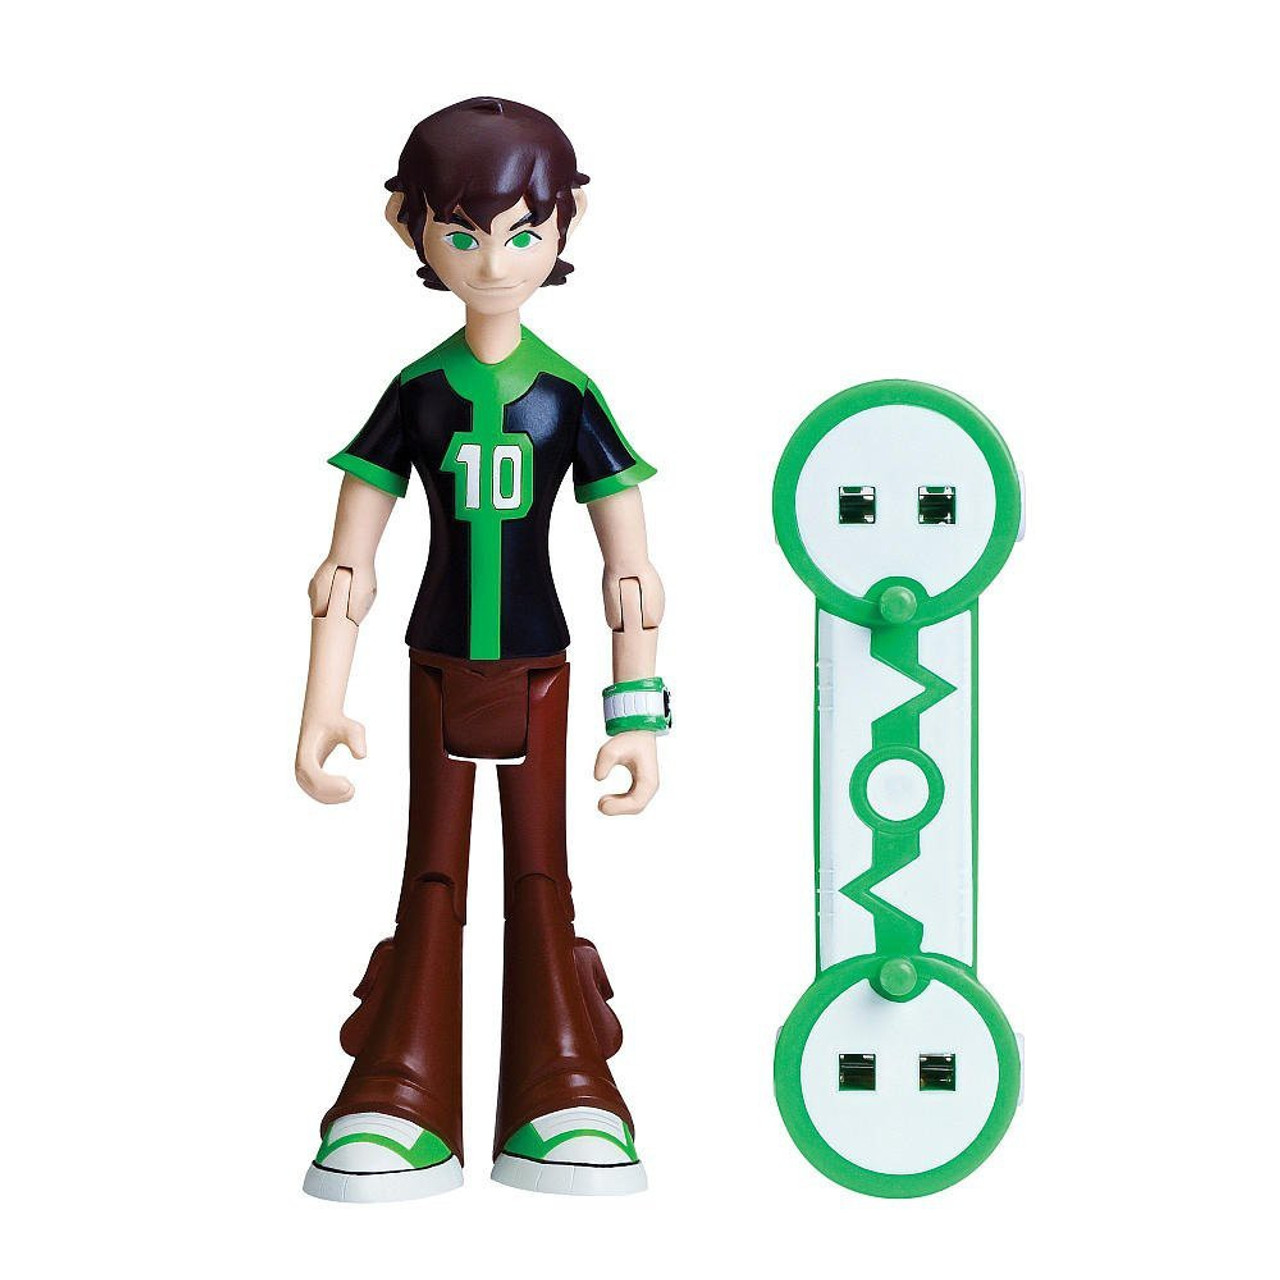 Ben 10 Omniverse Ben 4 Action Figure 16 Years Old Black Green Shirt Loose Bandai America Toywiz - ben 10 shirt roblox